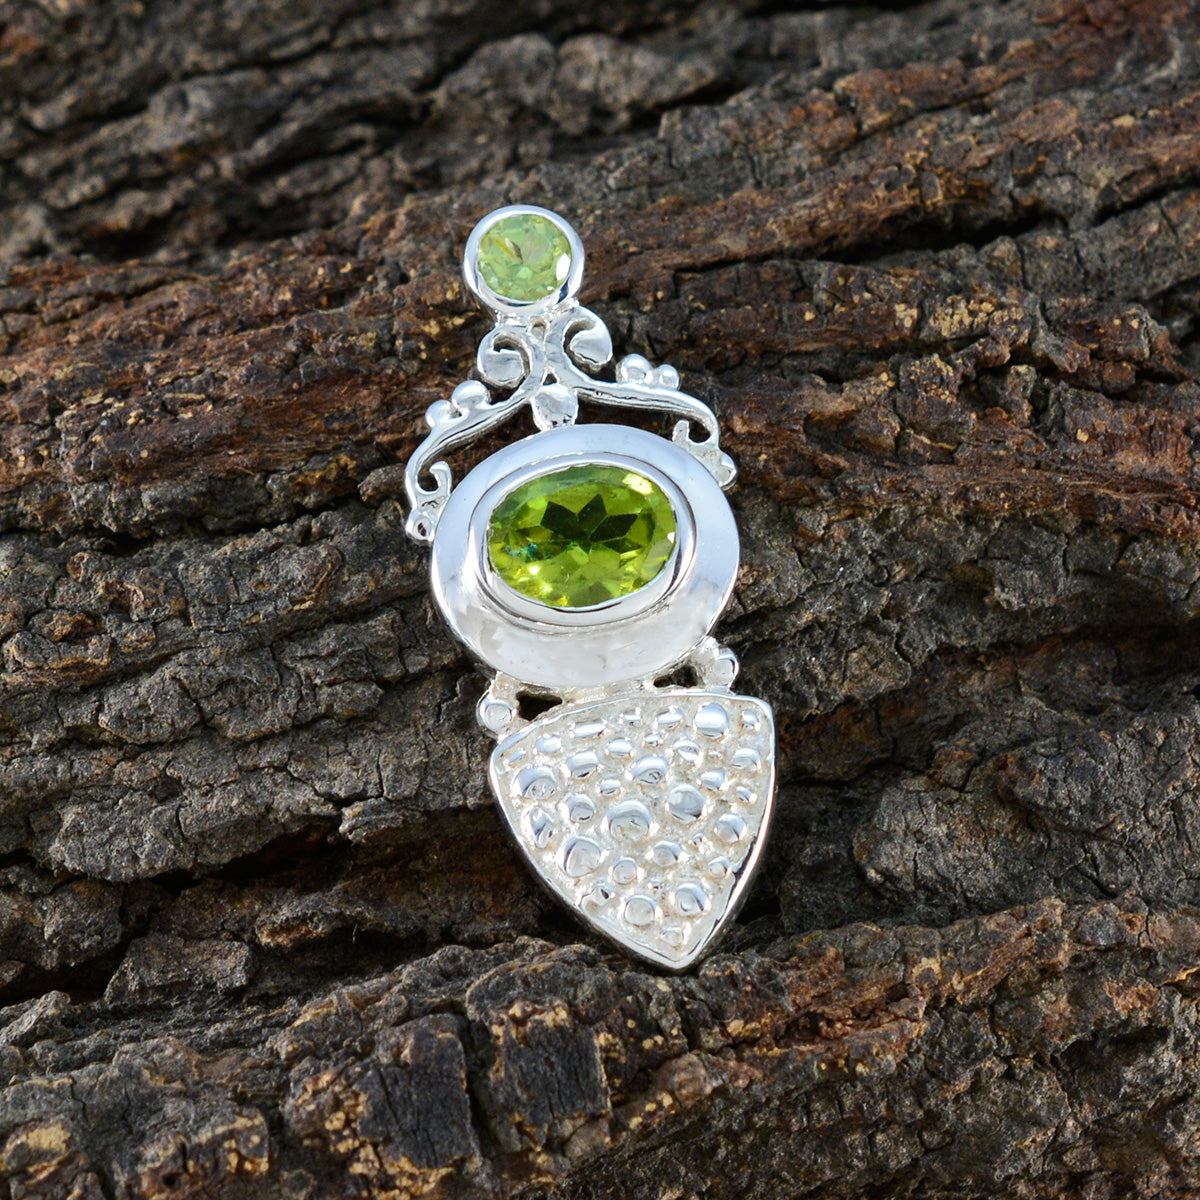 Riyo привлекательный драгоценный камень, многогранный зеленый перидот, кулон из стерлингового серебра, подарок на Рождество